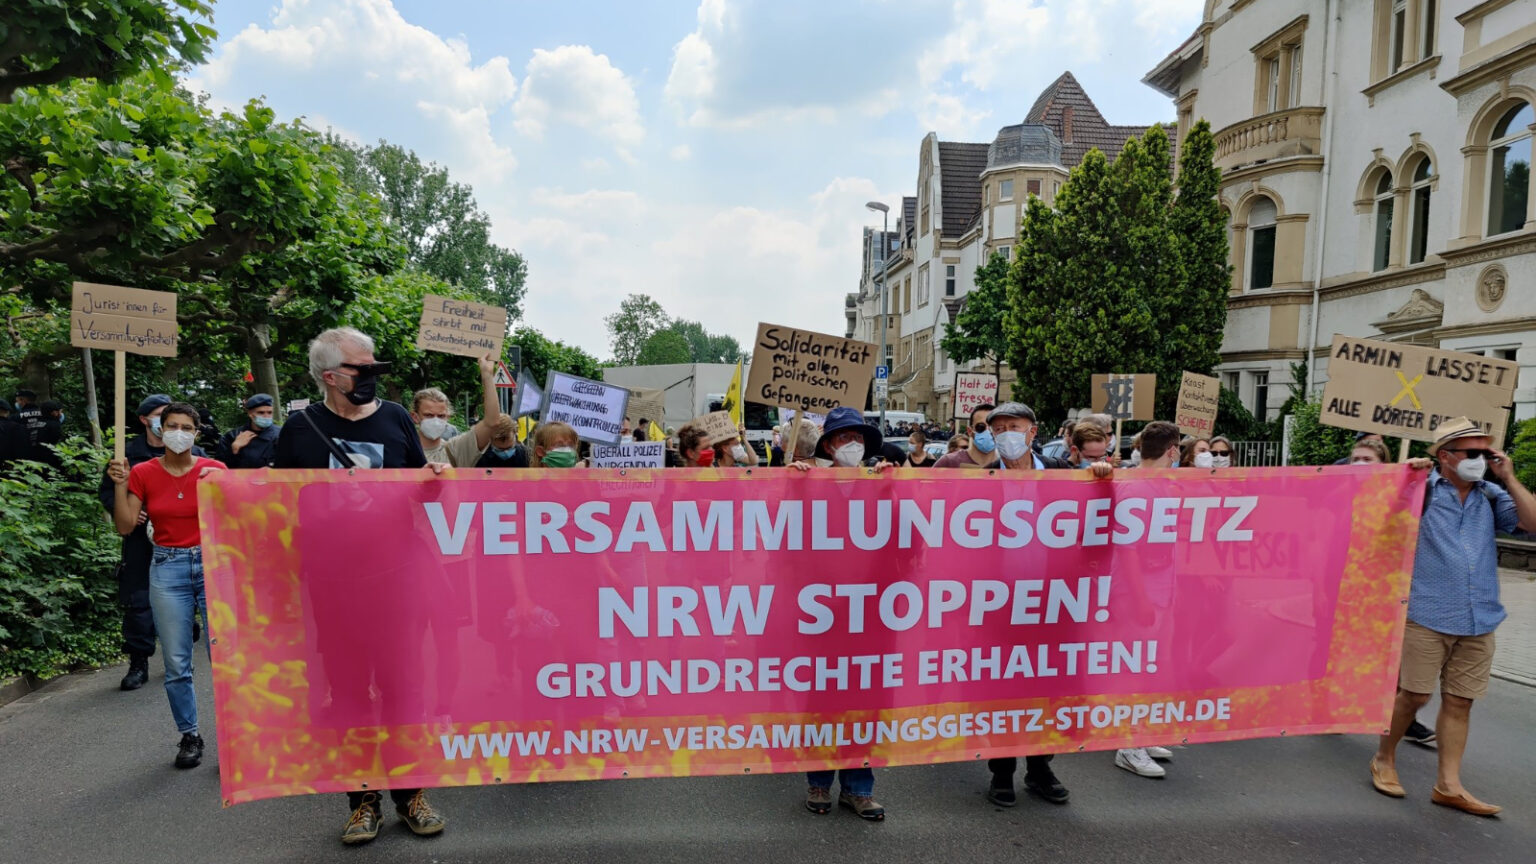 Bild einer Demonstration gegen das Versammlungsgesetz NRW. Banner mit der Aufschrift "Versammlungsgesetz NRW stoppen! Grundrechte erhalten! www.nrw-versammlungsgesetz-stoppen.de